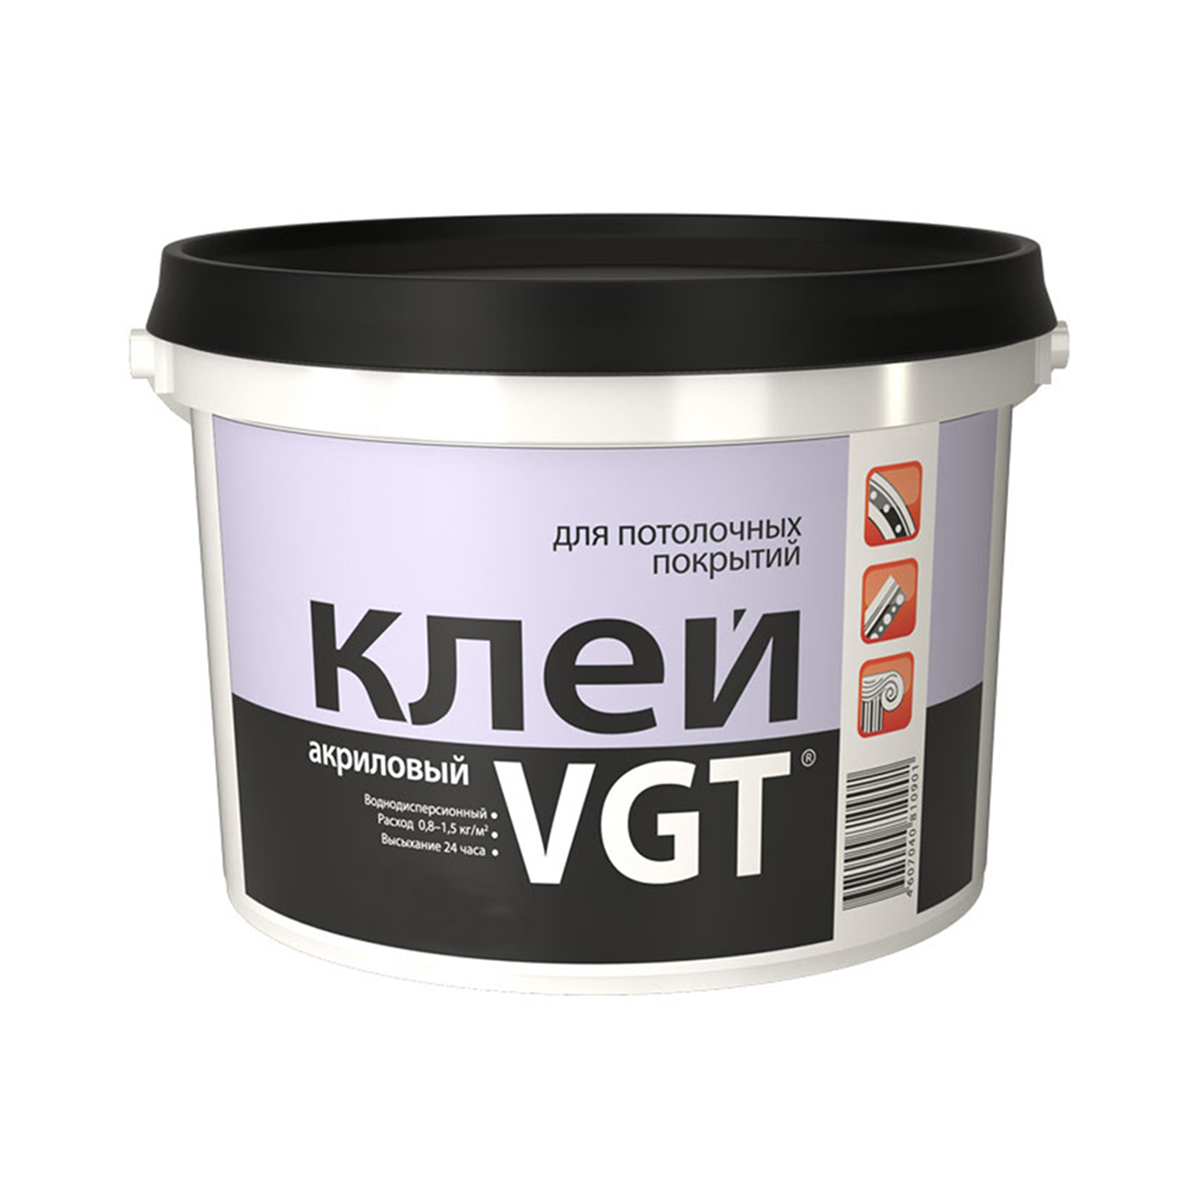 Клей для потолочных покрытий VGT, акриловый, 0,5 кг клей для потолочных плит новбытхим